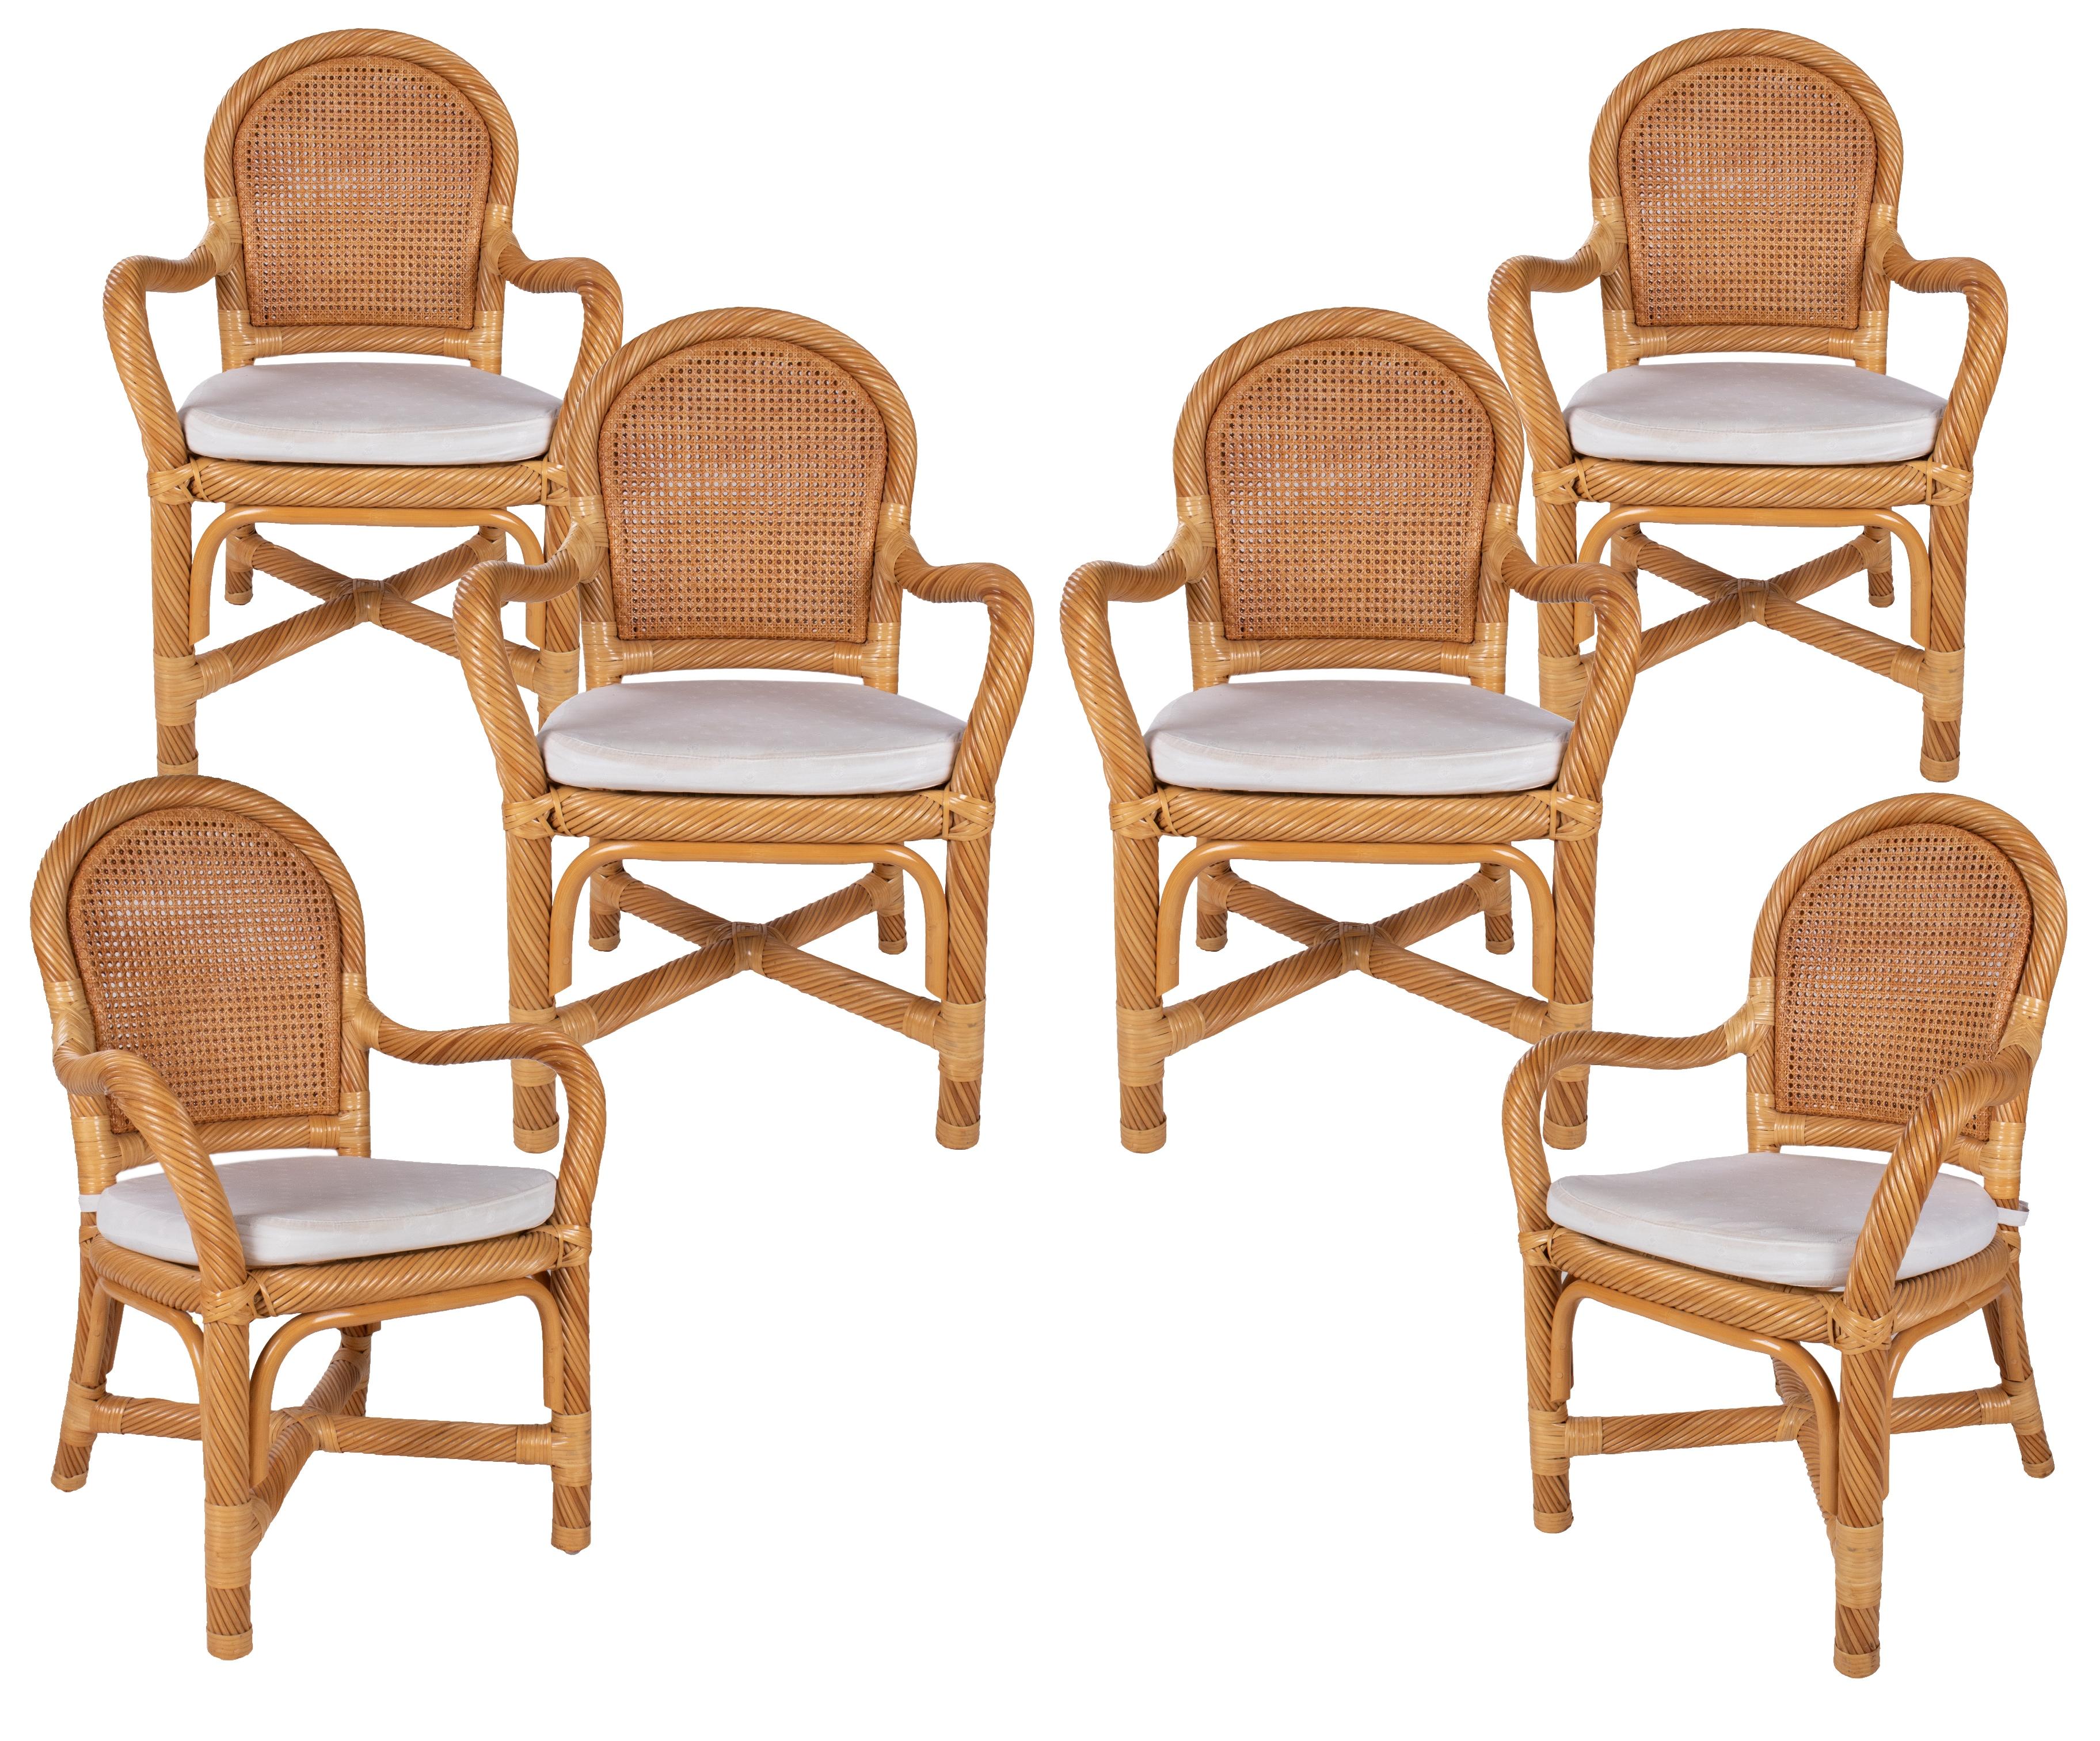 Ensemble espagnol des années 1970 de six fauteuils en bambou et osier fabriqués à la main